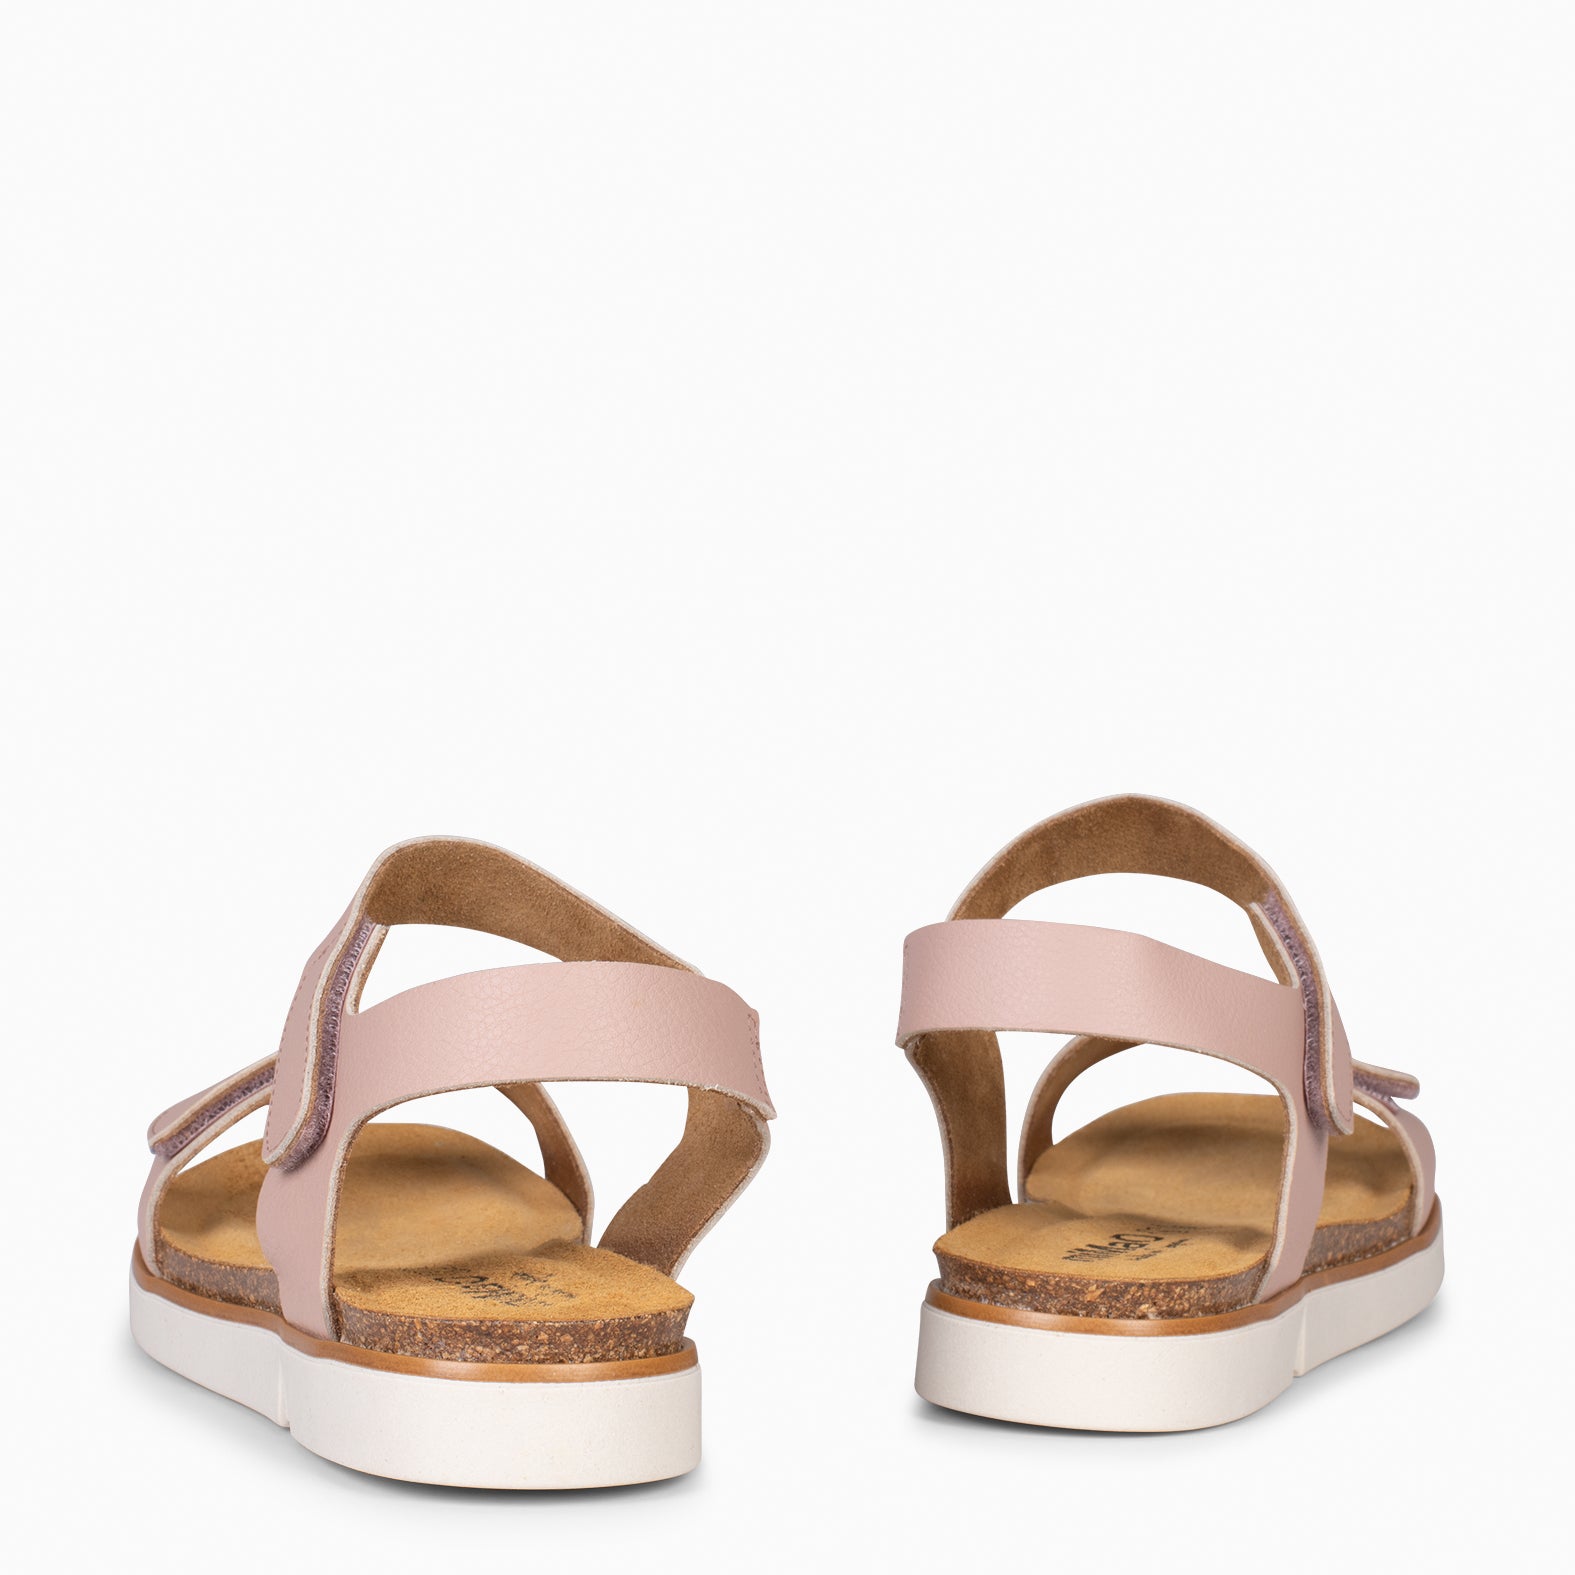 ARALIA – NUDE comfortable flat sandal